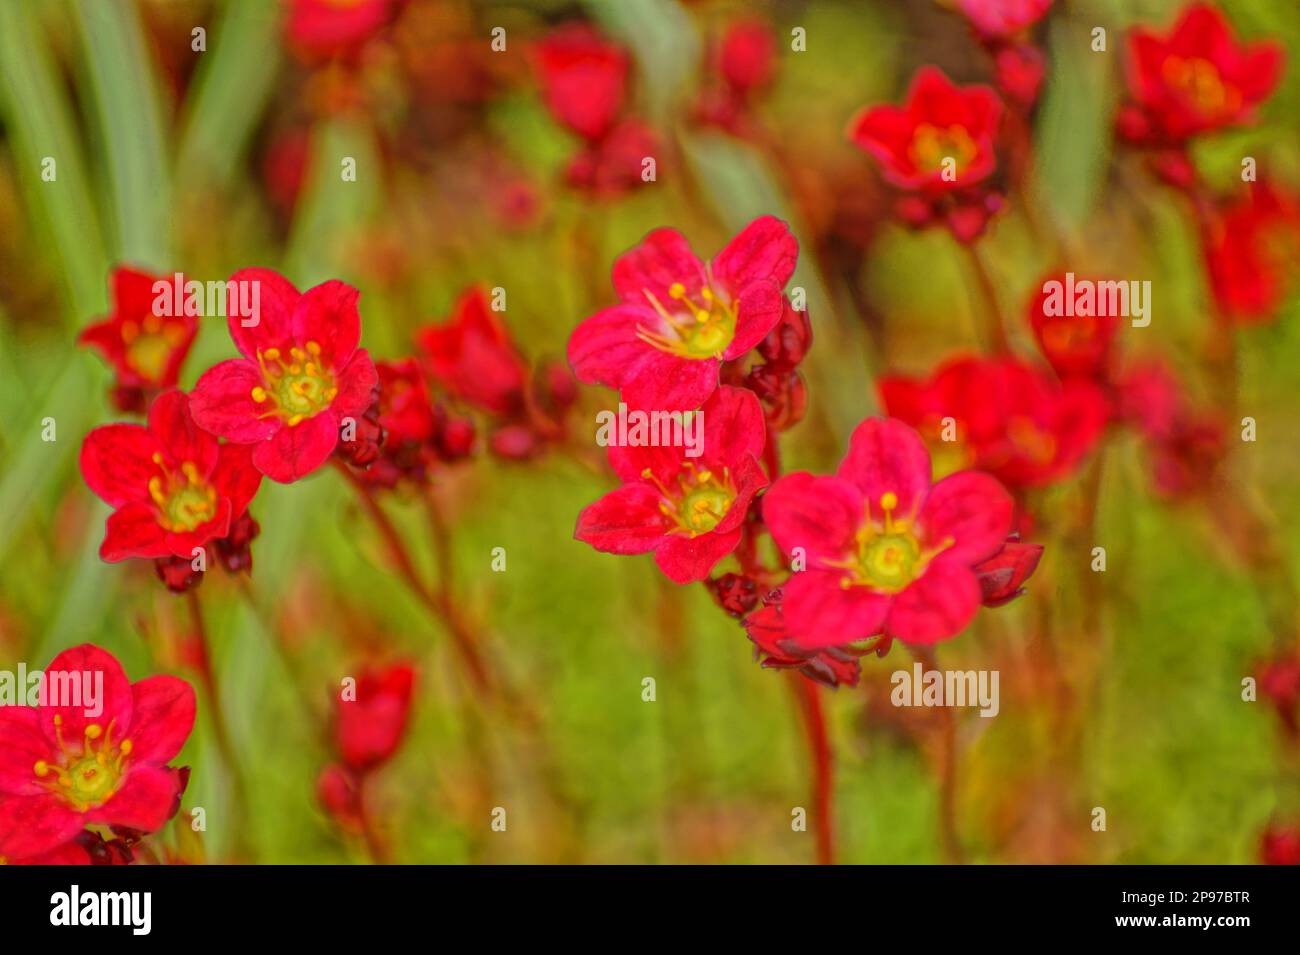 macro shot of red stone crusher flowers Stock Photo